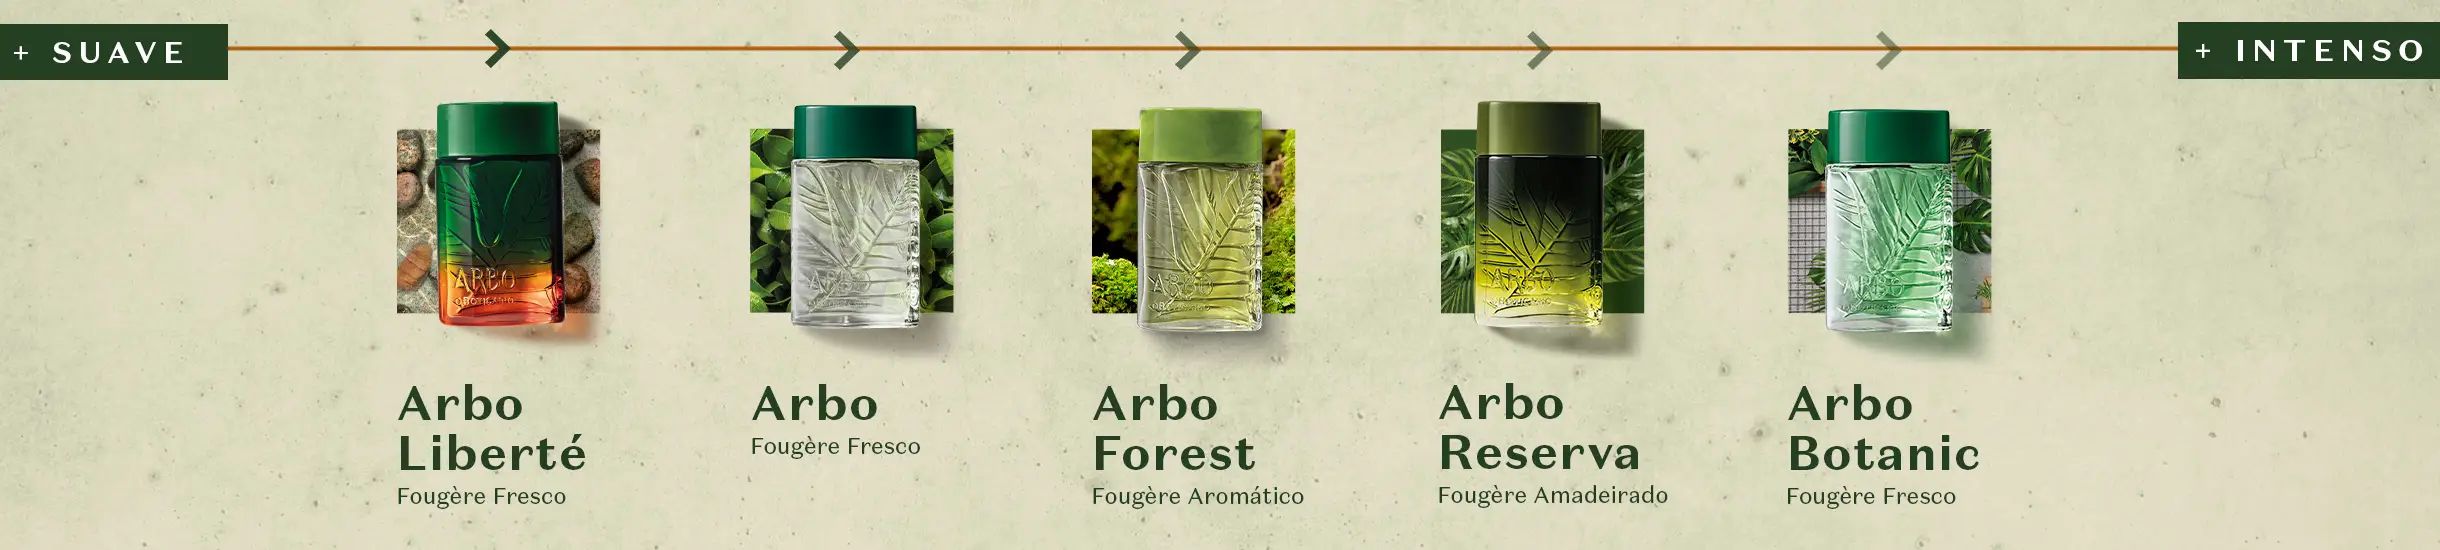 Arbo Forest - O Boticário - Gallery 4